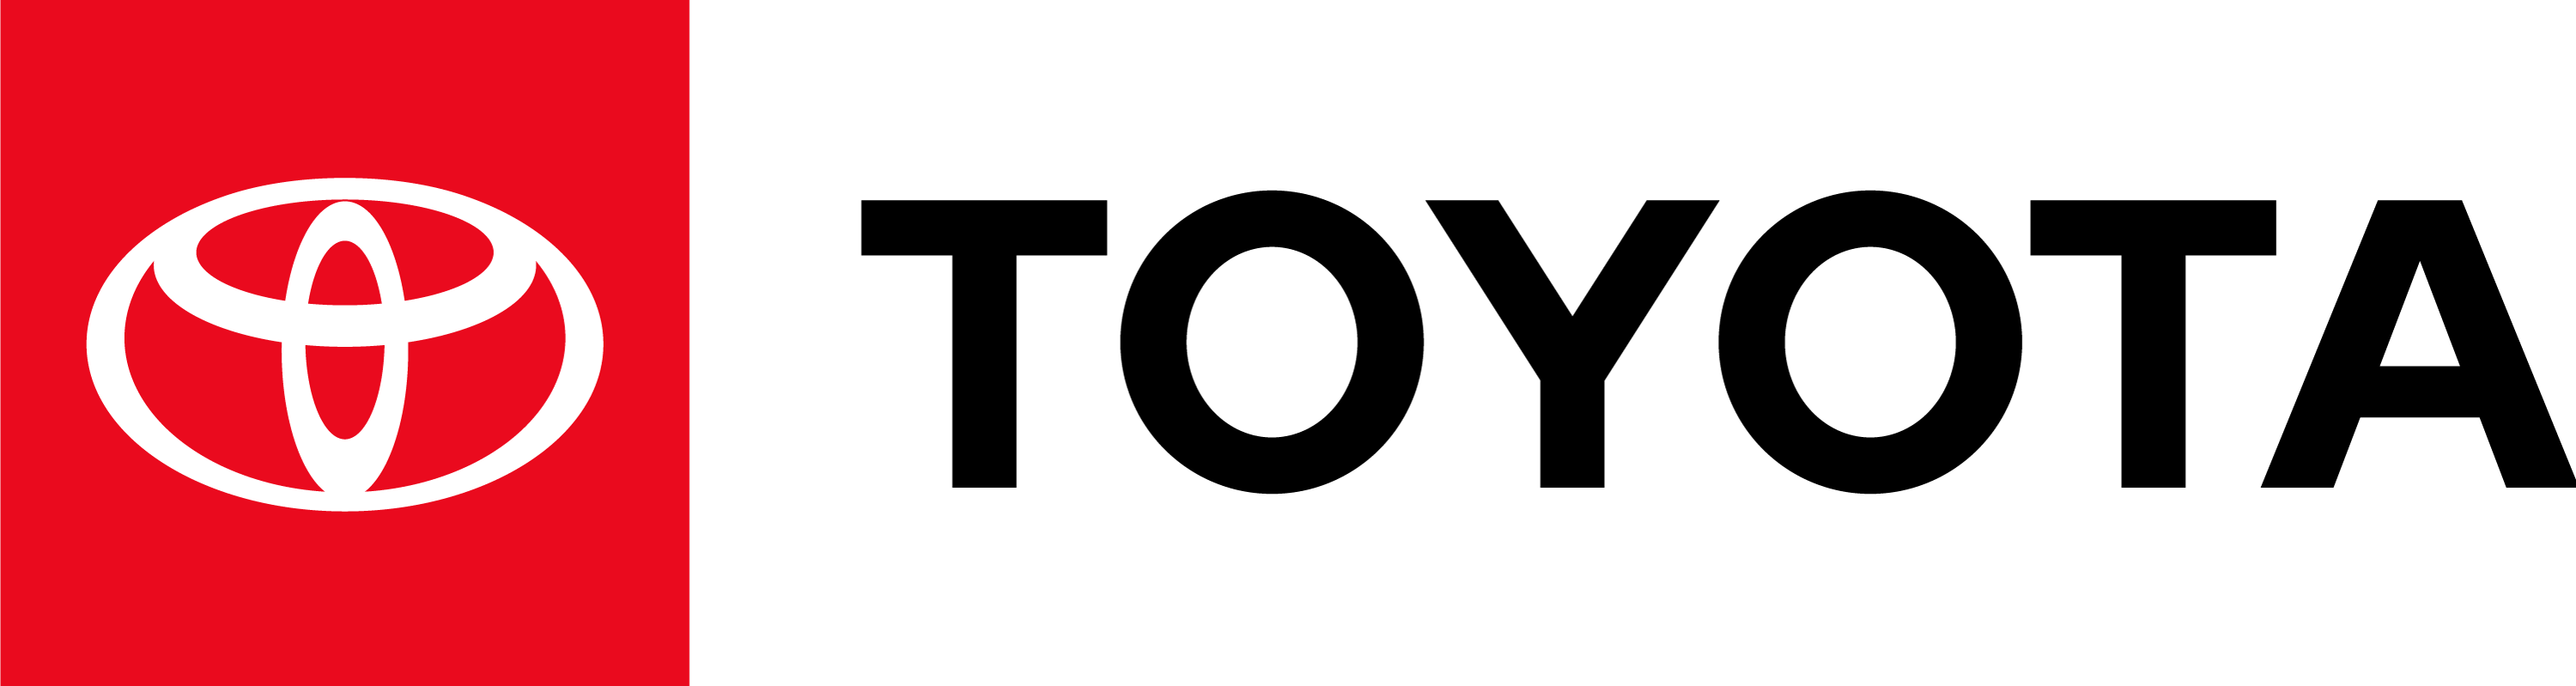 toyota logo transparent